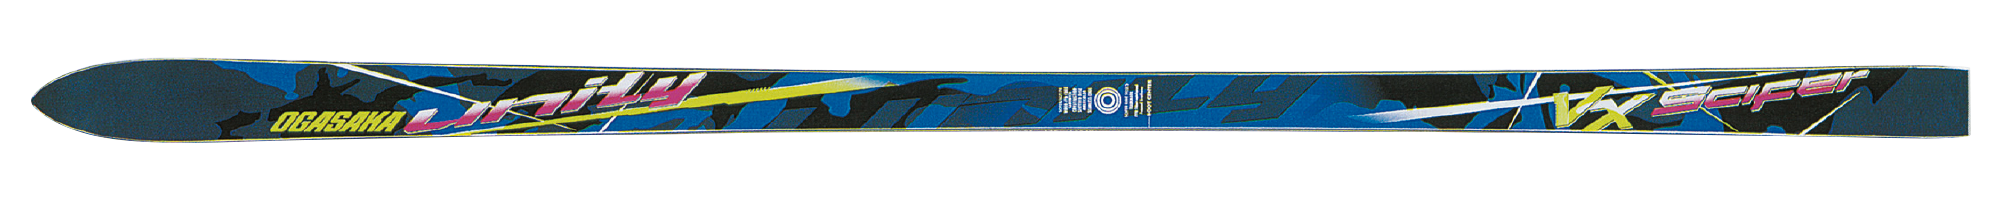 小賀坂スキーの歴史 オガサカスキー アルペンスキー ノルディックスキー スキー用品 製作 販売